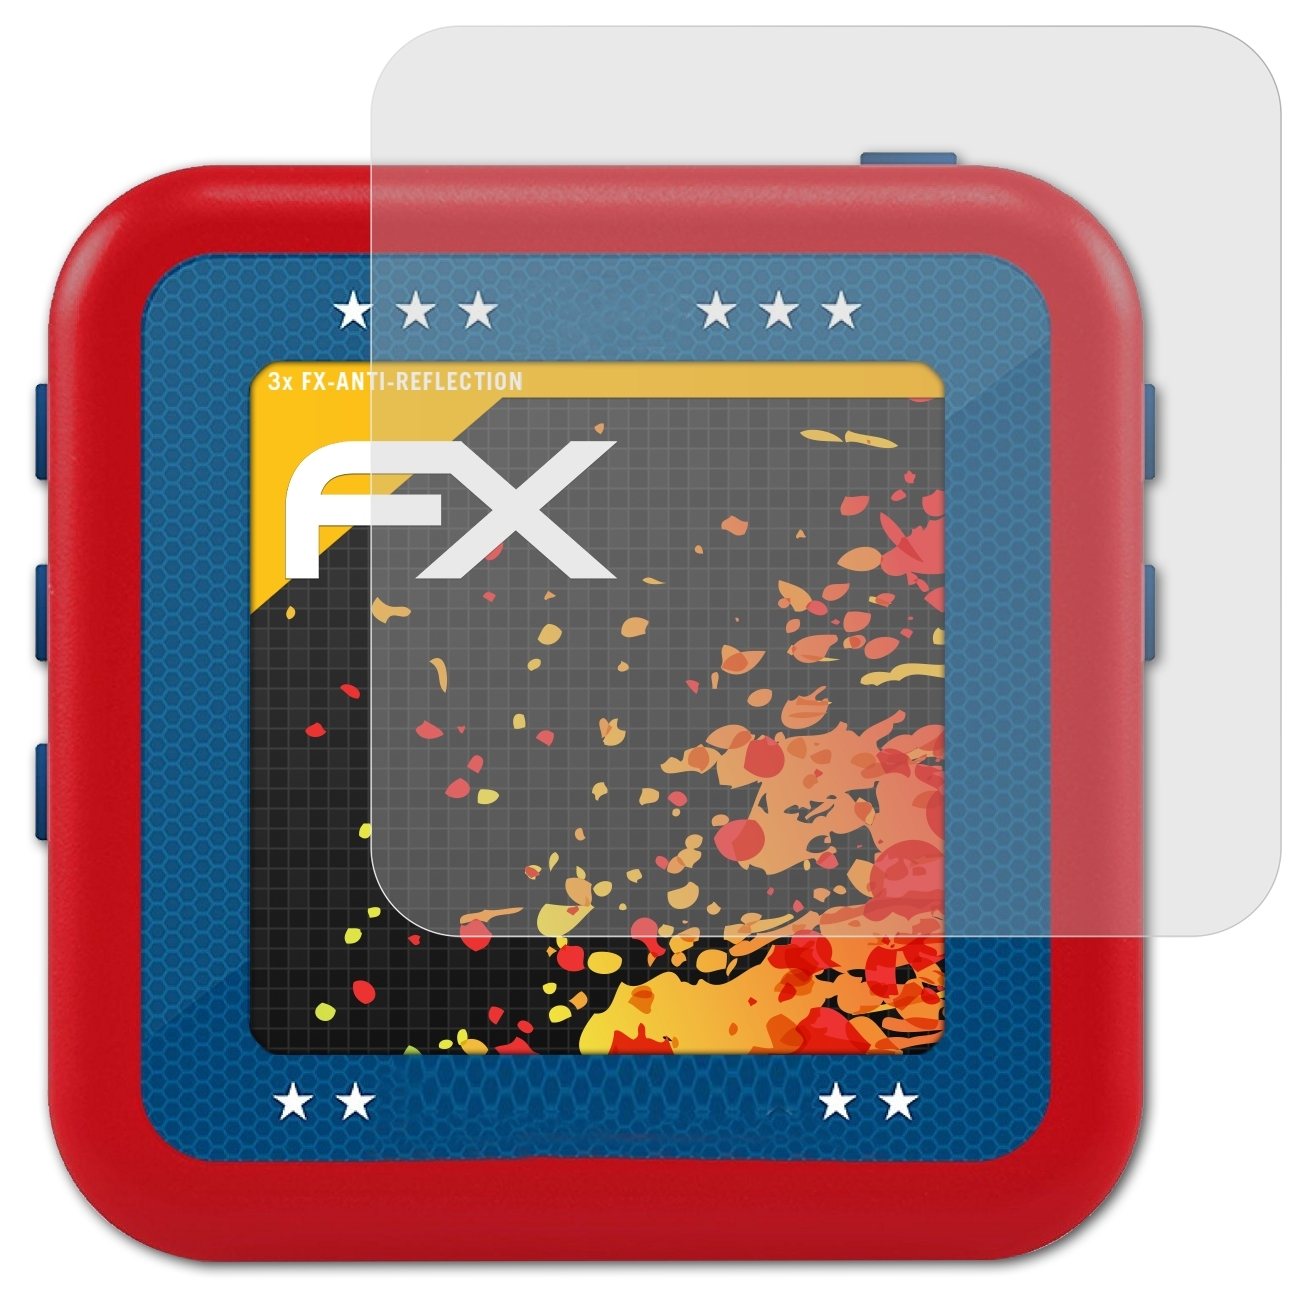 ATFOLIX 3x FX-Antireflex Displayschutz(für Bushnell Phantom)